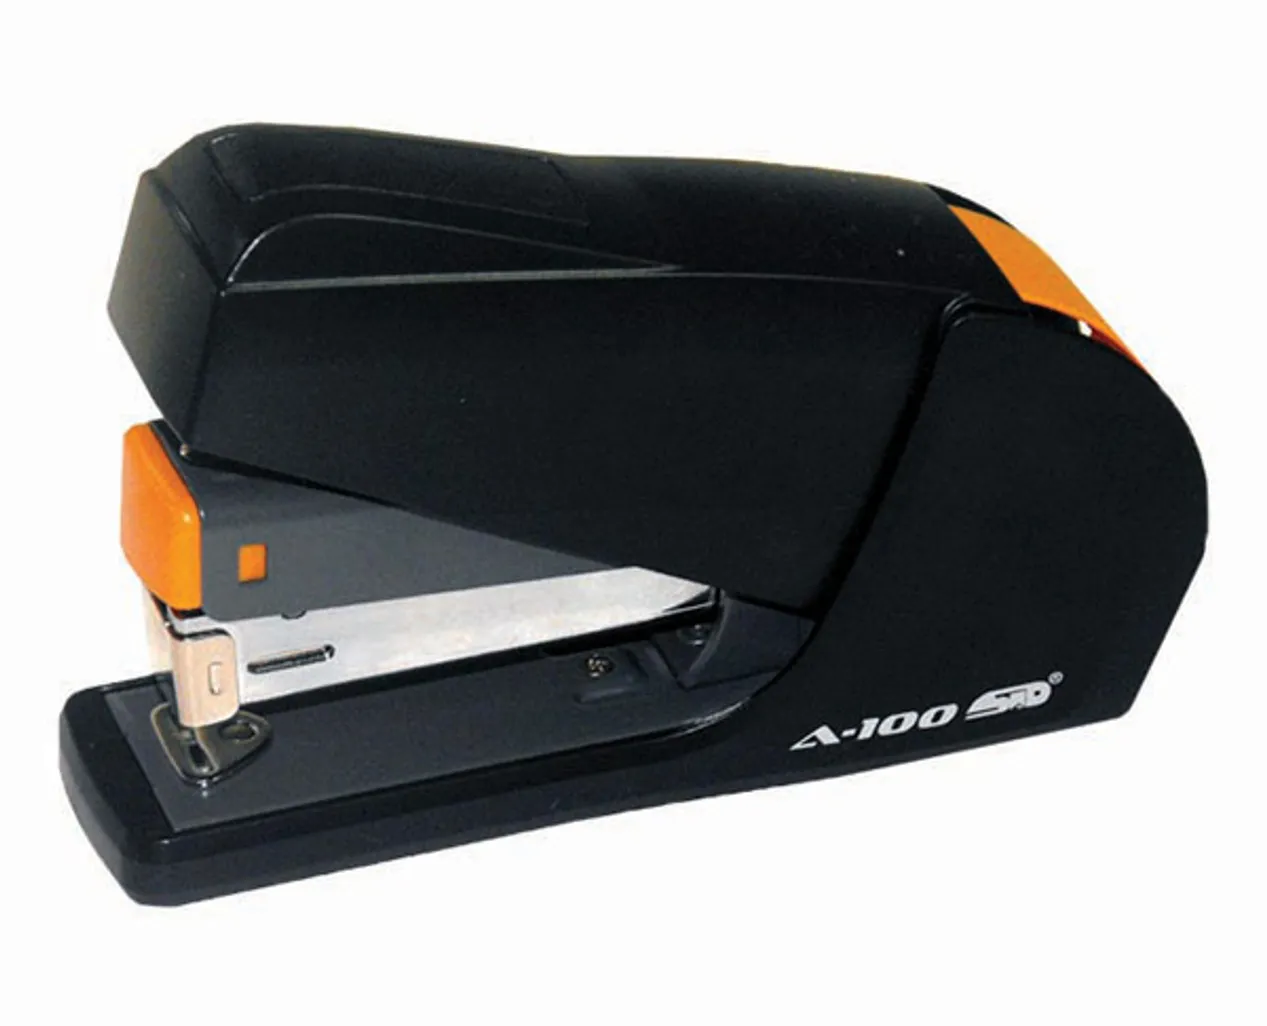 ms510r stapler